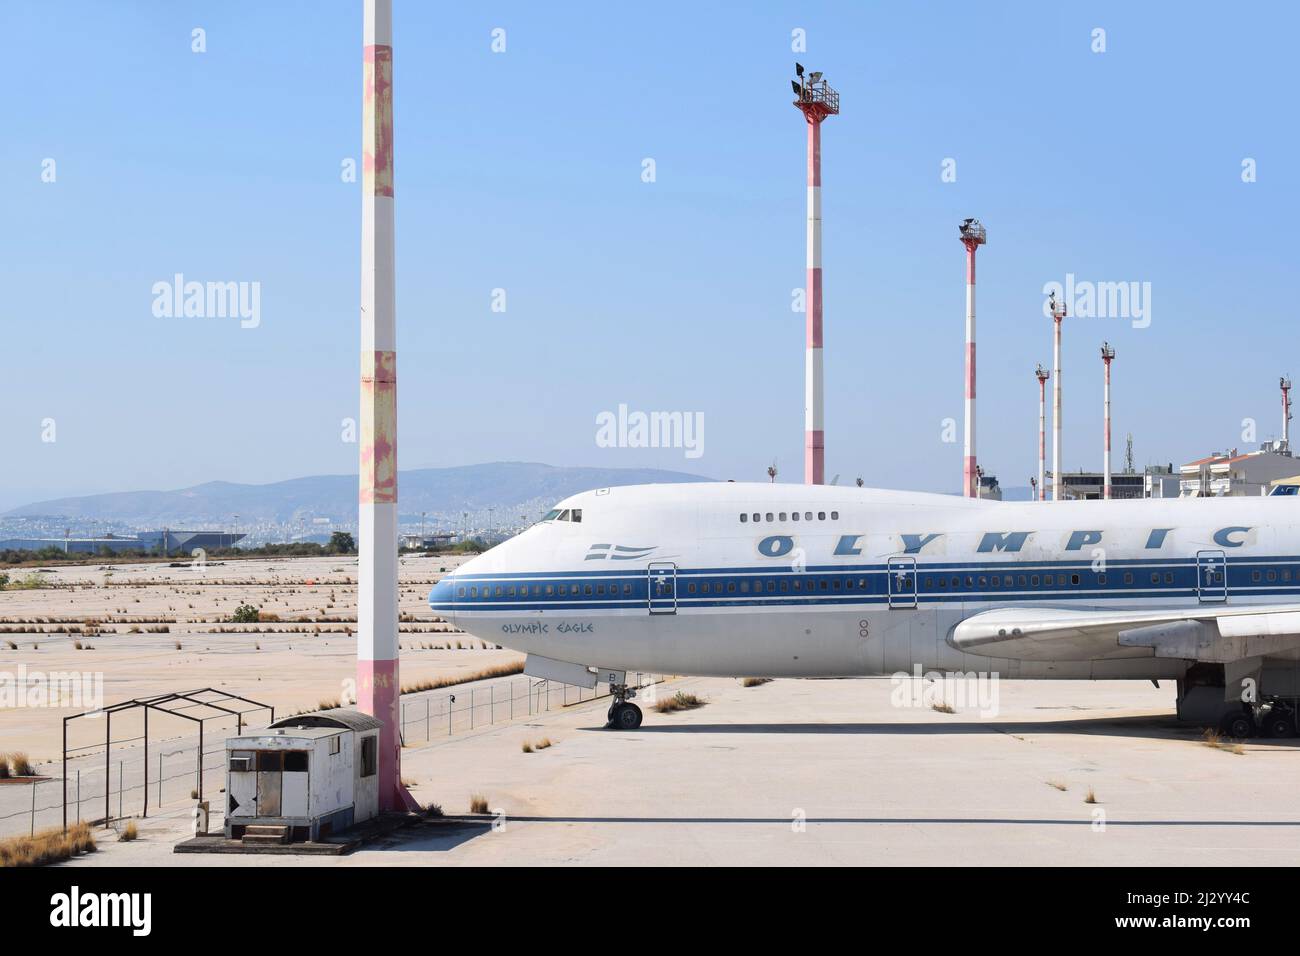 Aéroport international abandonné d'Ellinikon (ou Hellinikon) avec plusieurs avions anciens. Anciens avions d'Olympic Airways à Ellinikon, Grèce Banque D'Images